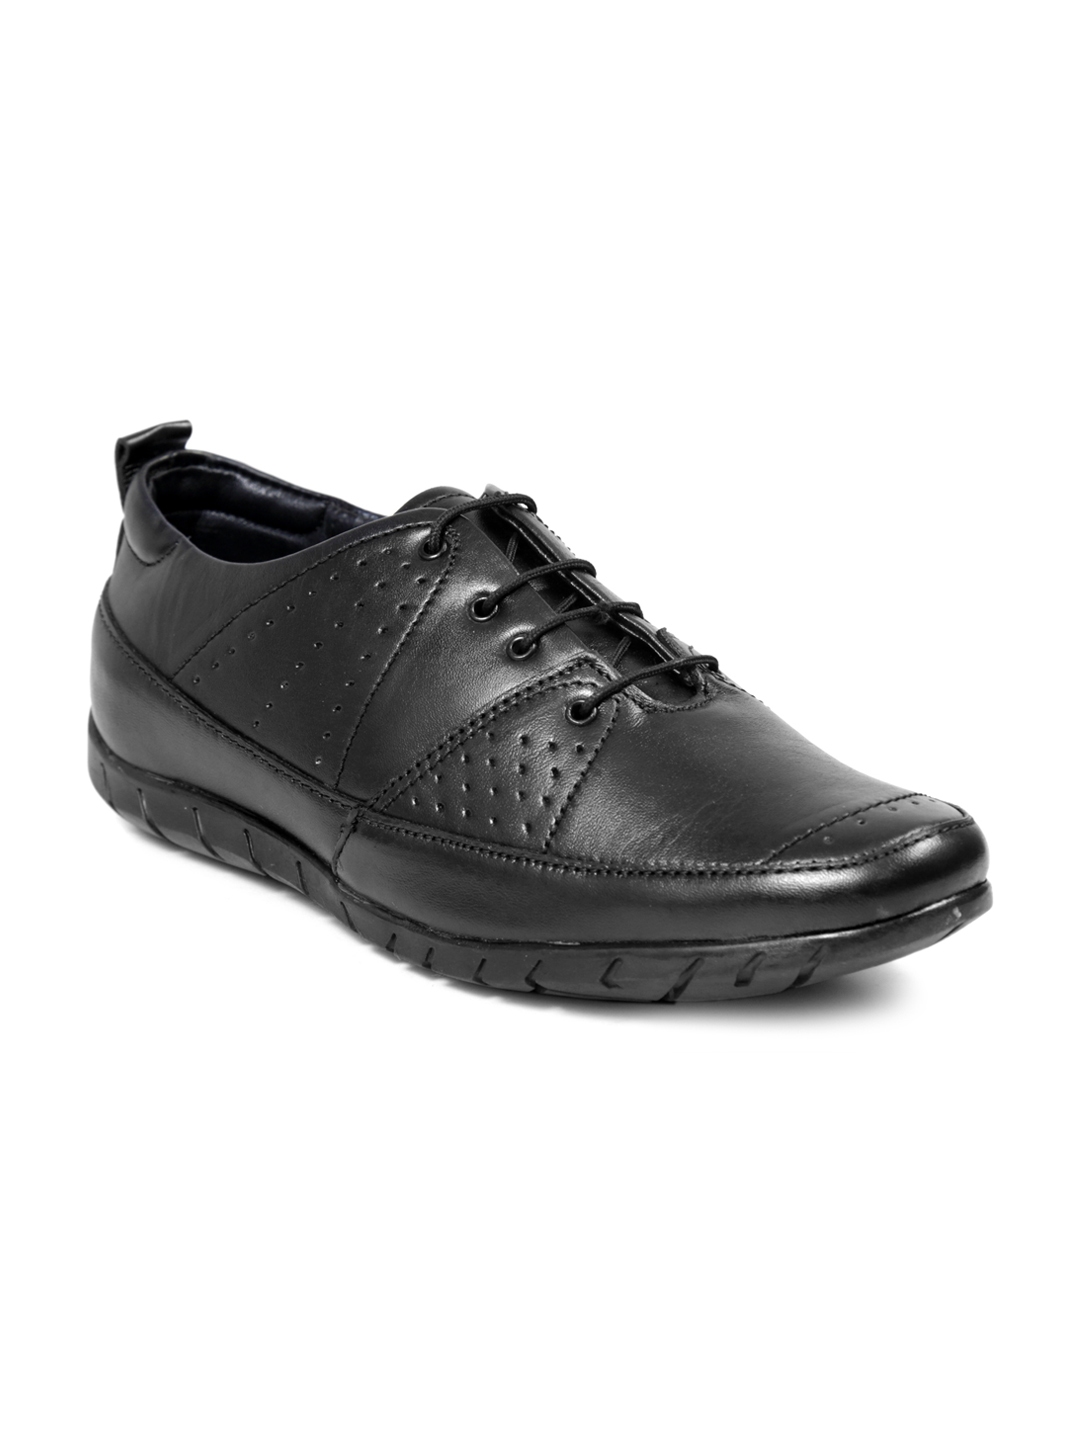 Buy Bacca Bucci Men Black Leather Formal Shoes - Formal Shoes for Men ...